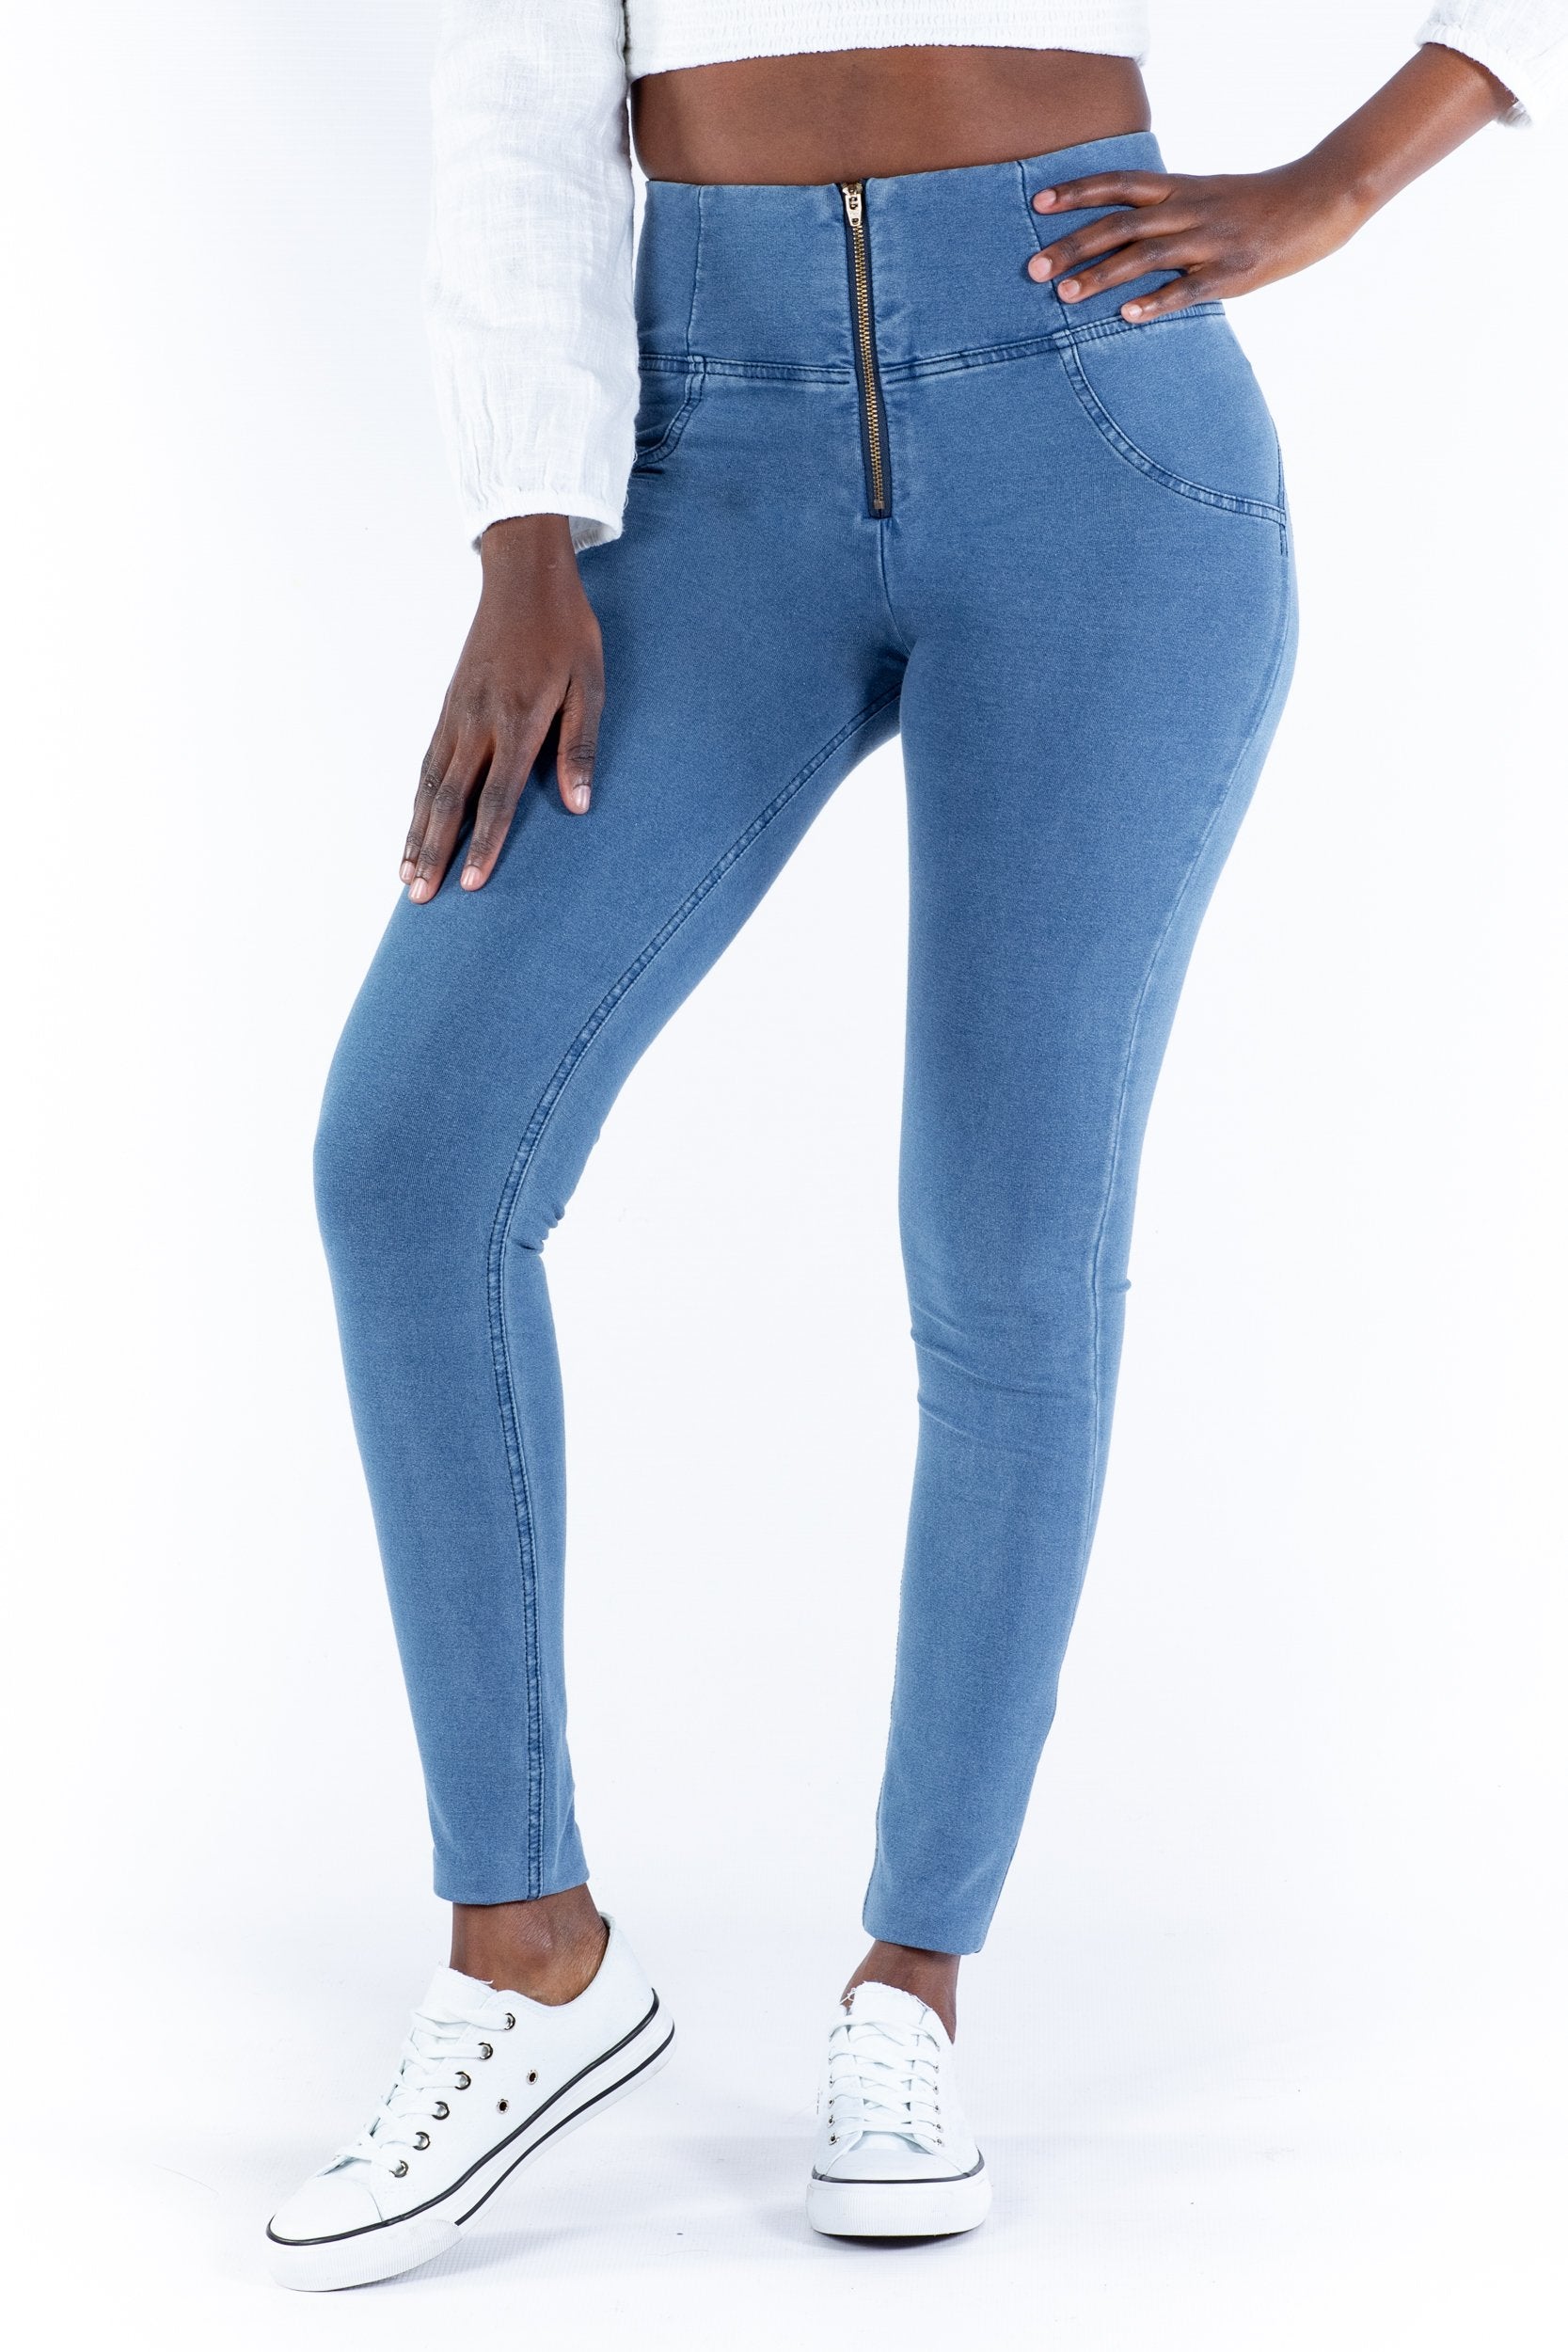 High waist Butt lifting Shaping jeans/Jeggings - Light blue- Shop